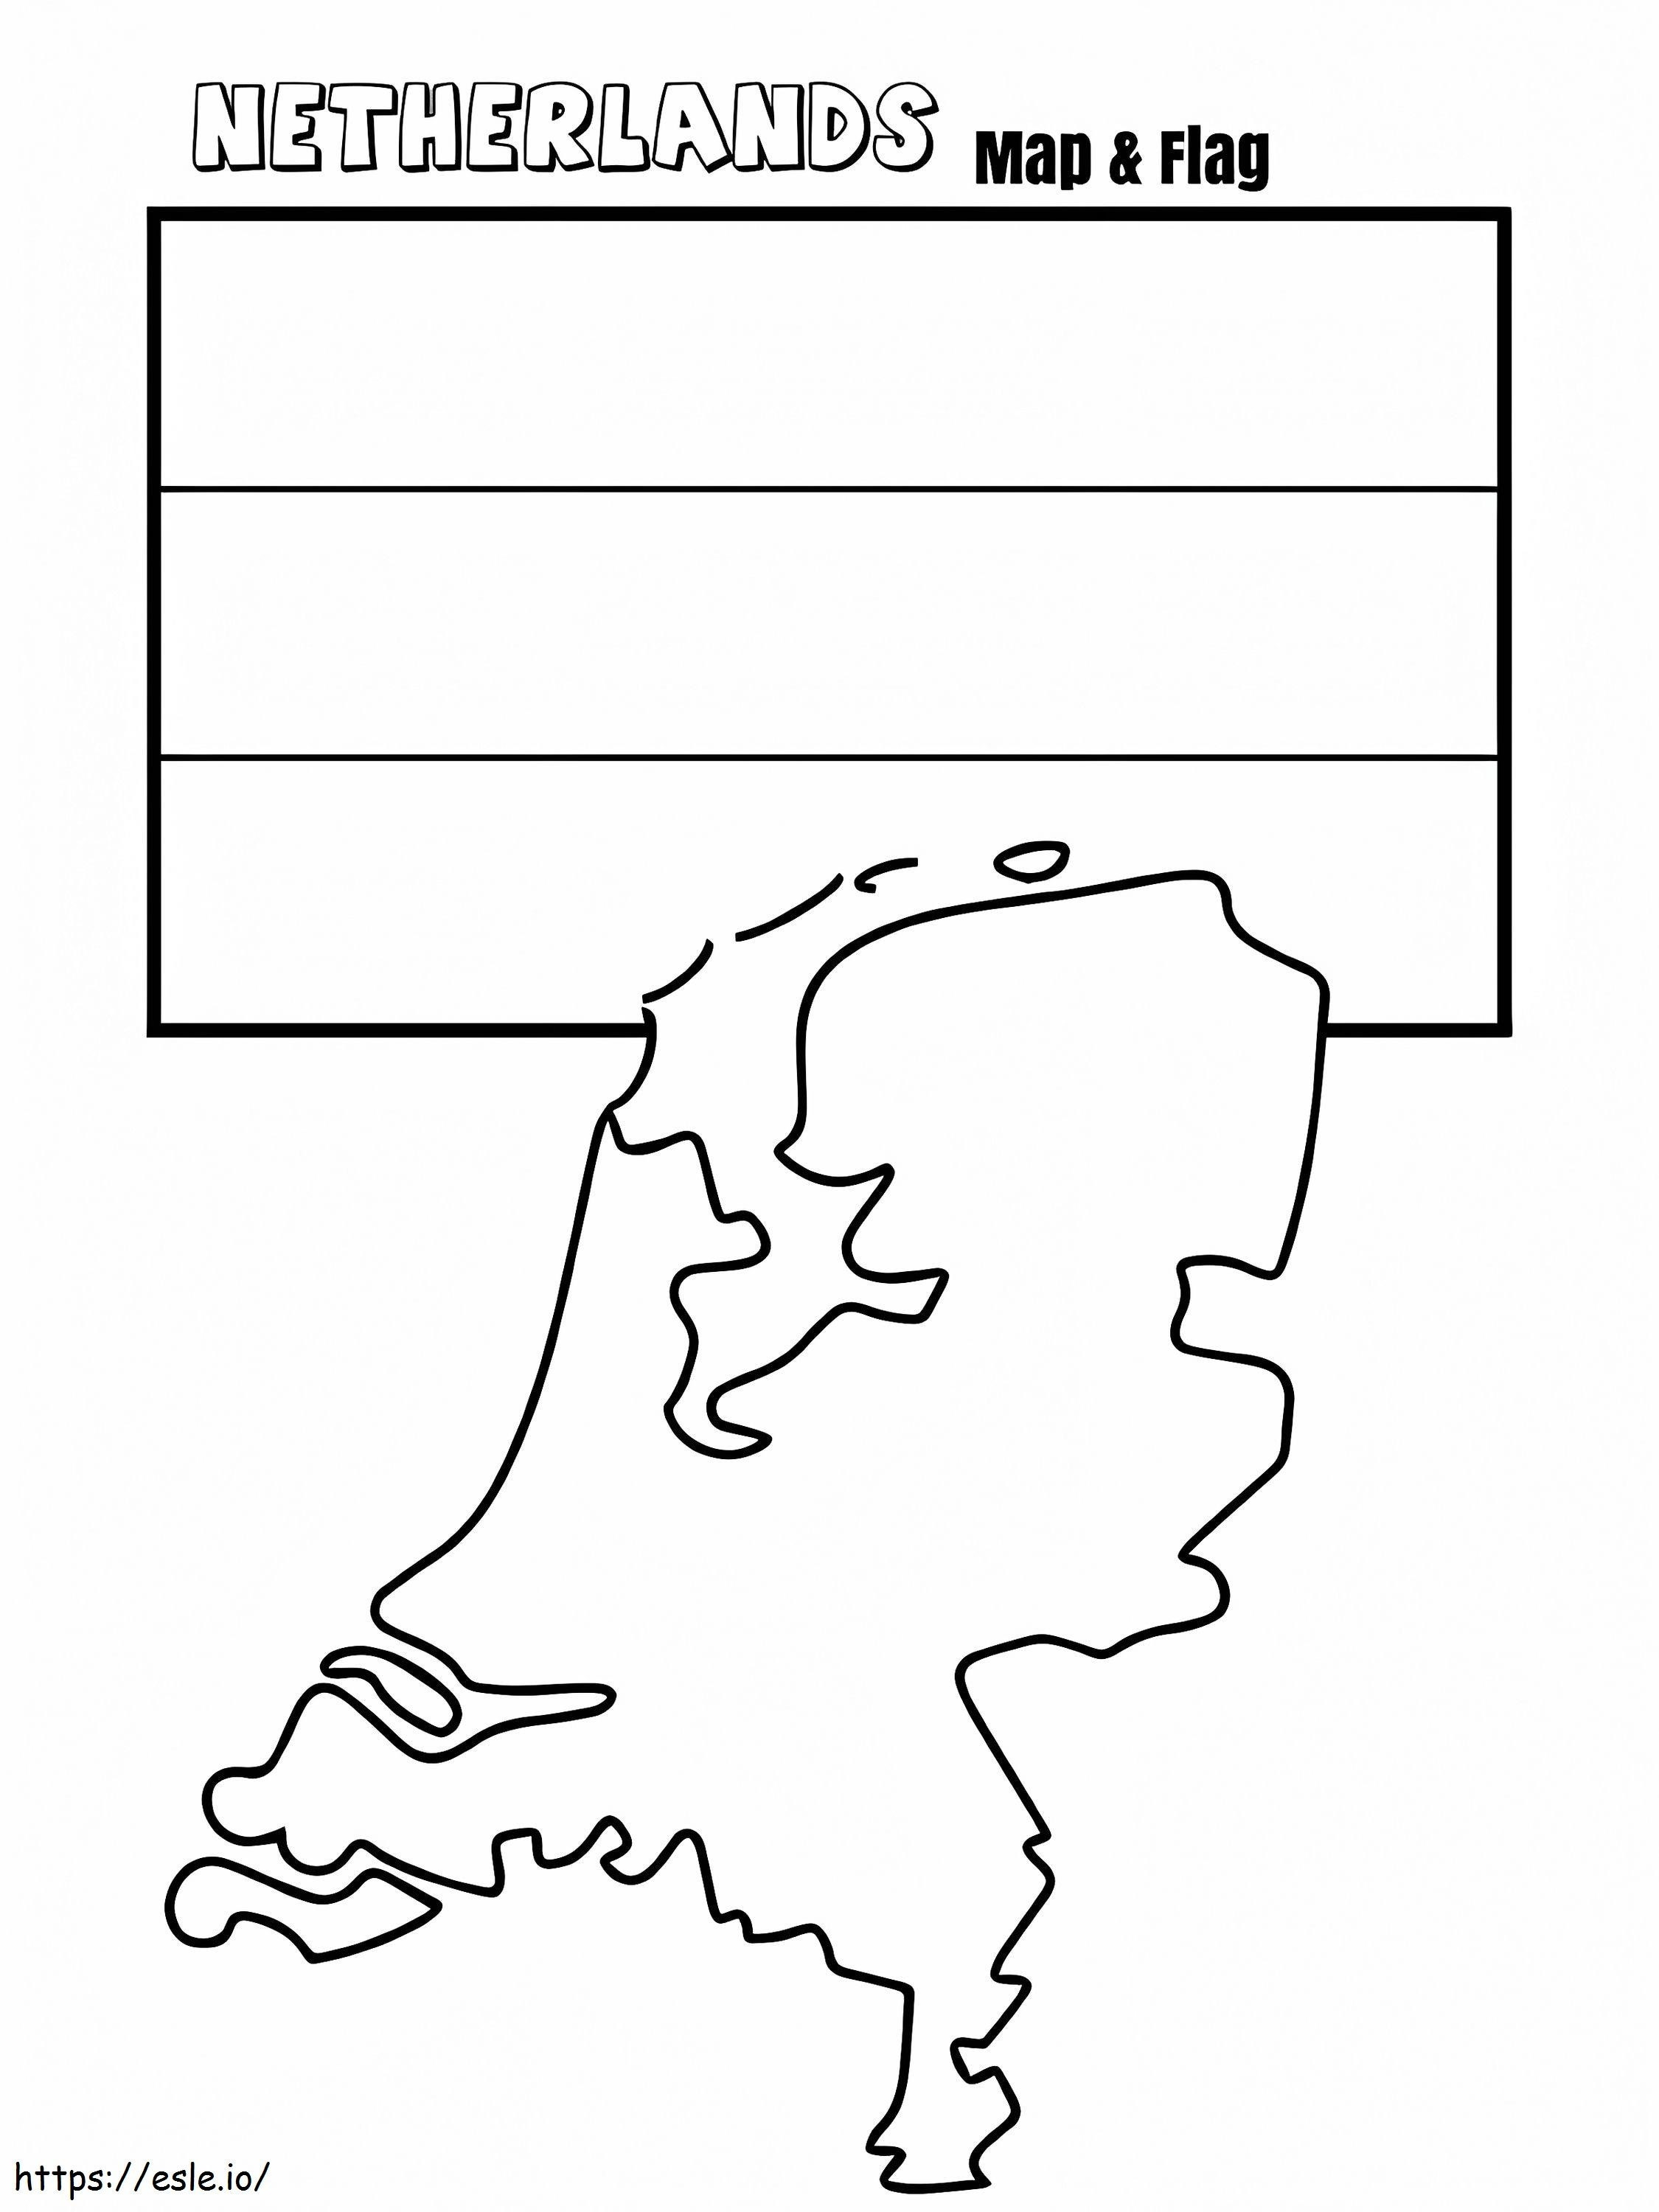 Mapa y bandera de Países Bajos para colorear